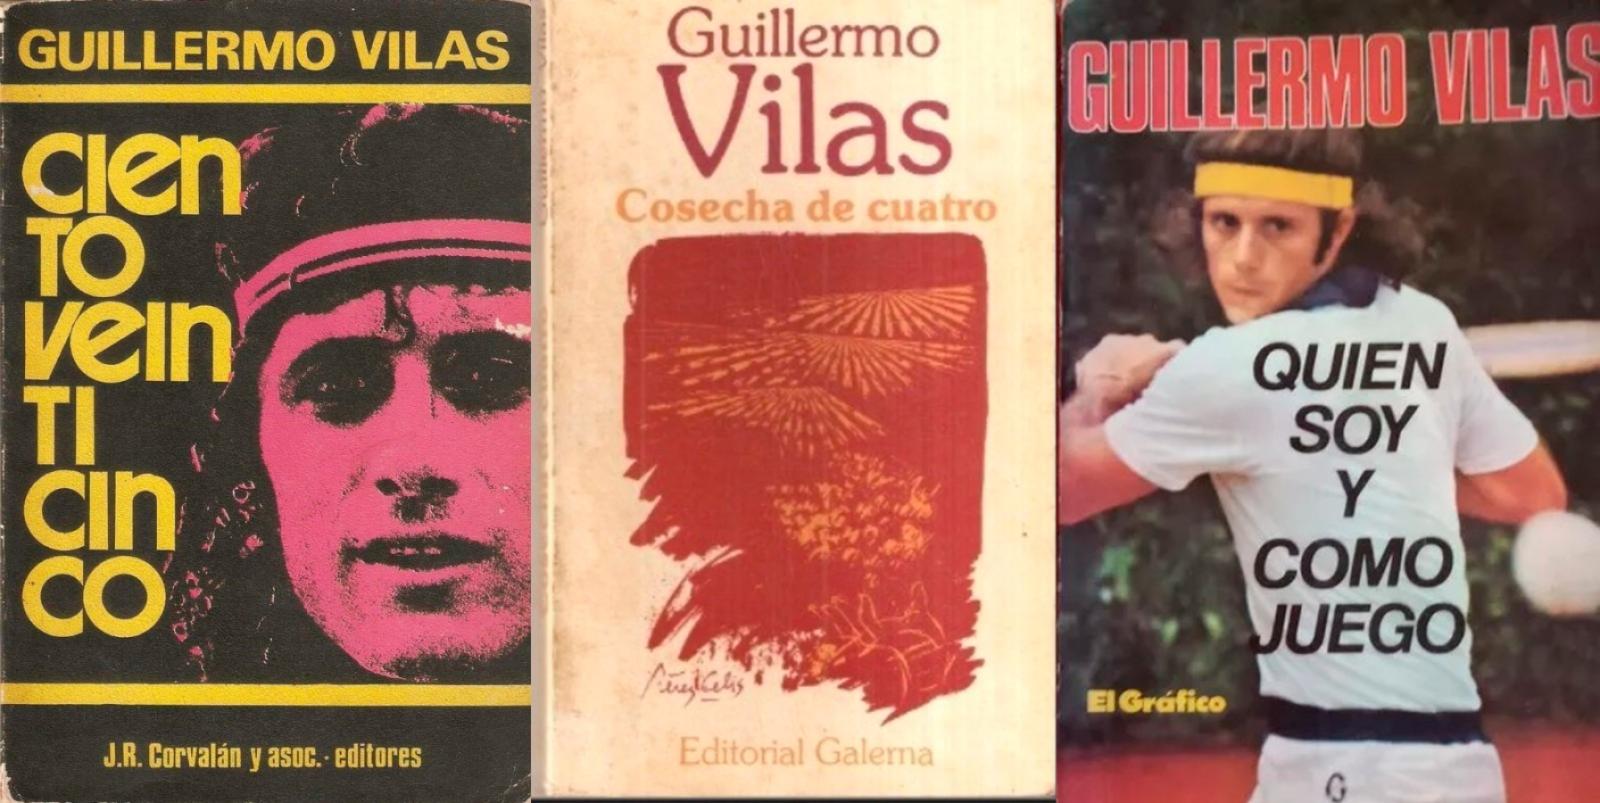 Guillermo Vilas - Figure 10